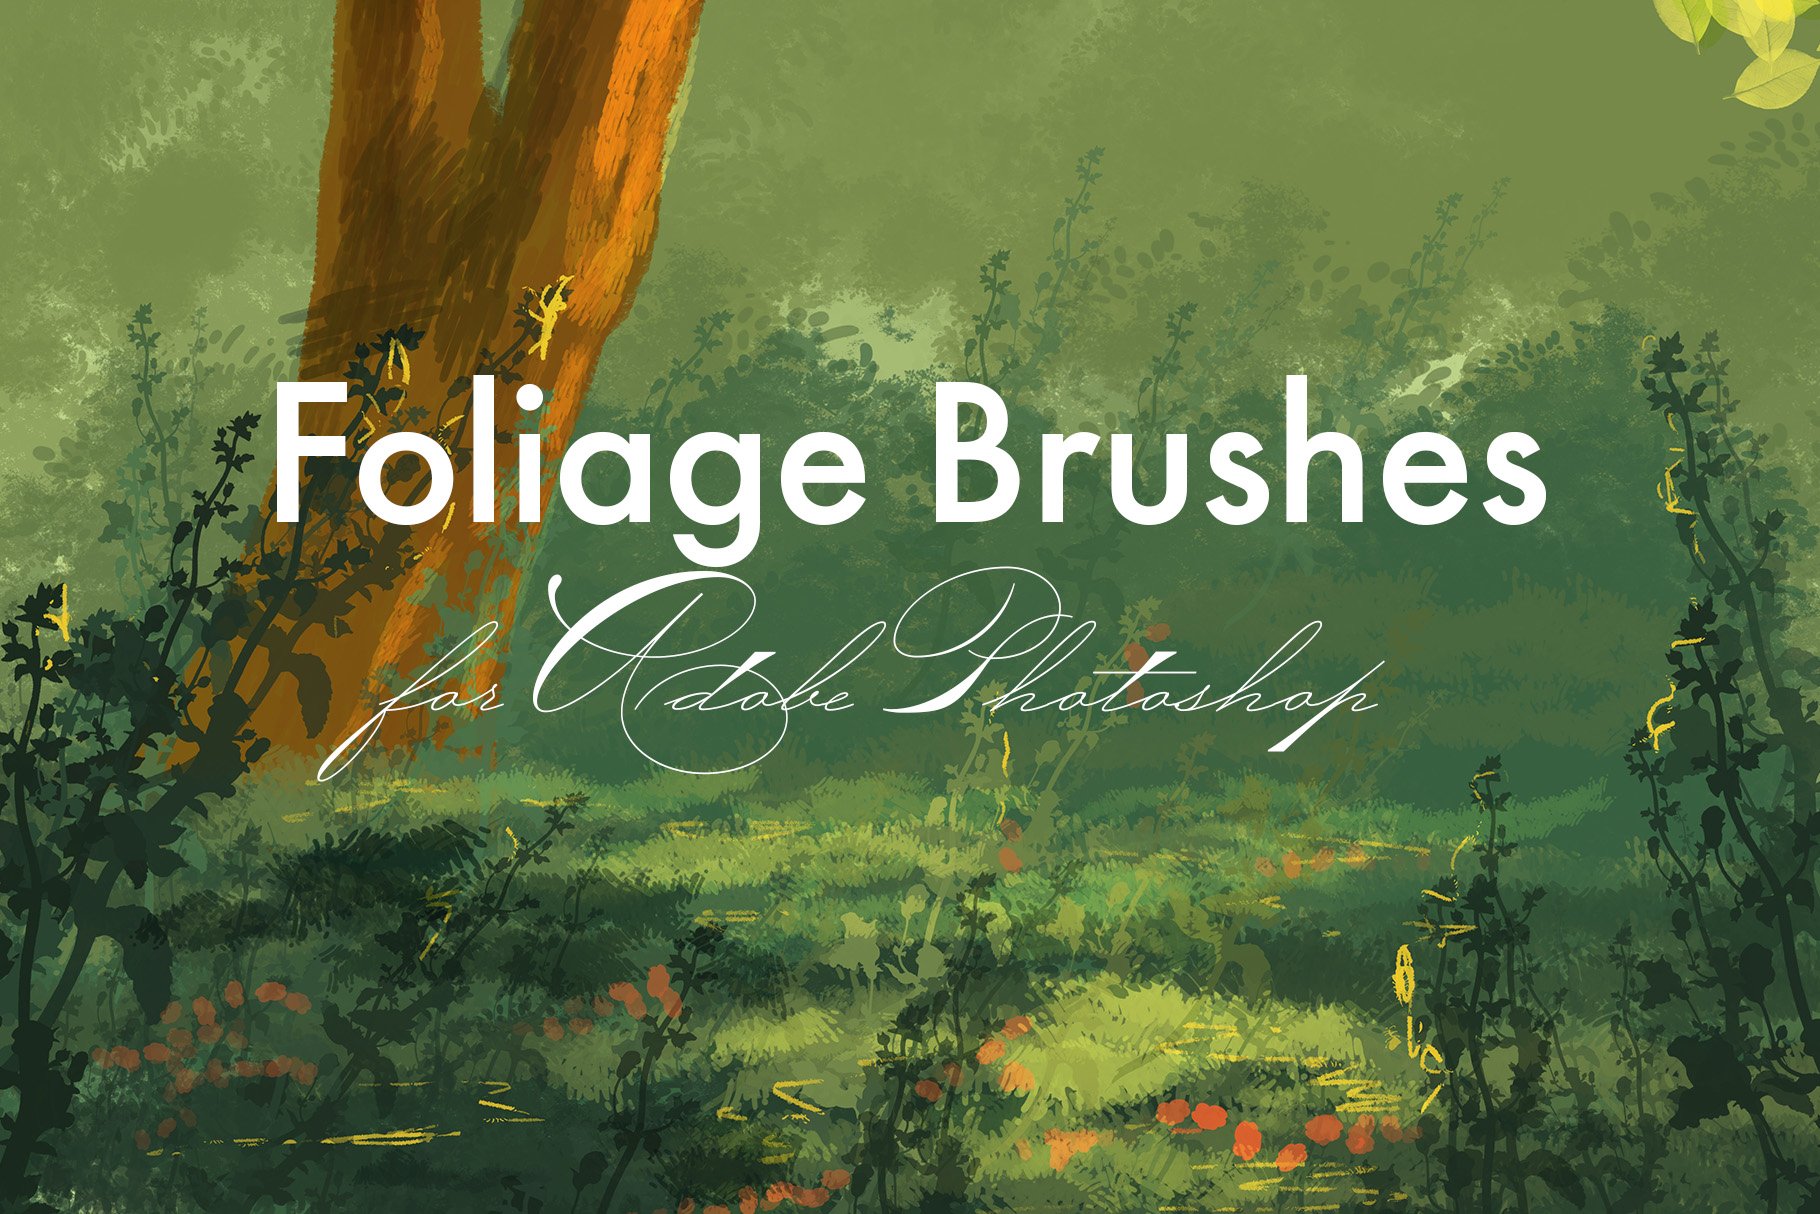 Foliage Brushes for Adobe Photoshopcover image.